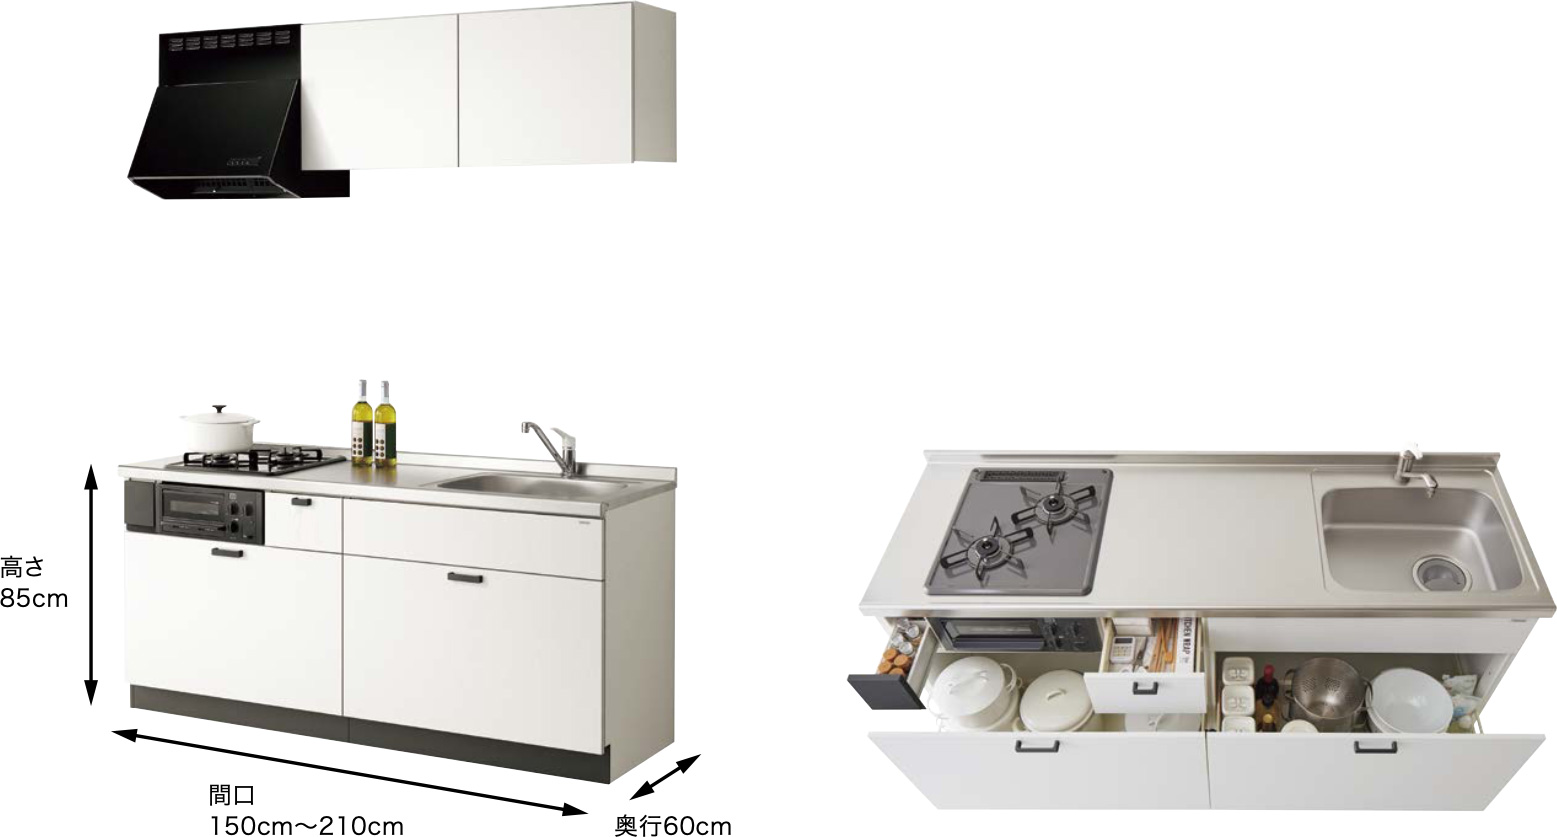 クリナップ コルティ テーブルコンロタイプ 間口165cm W600コンロ用 Sシリーズ 標準仕様 コンパクトキッチン システムキッチン W1650 - 1